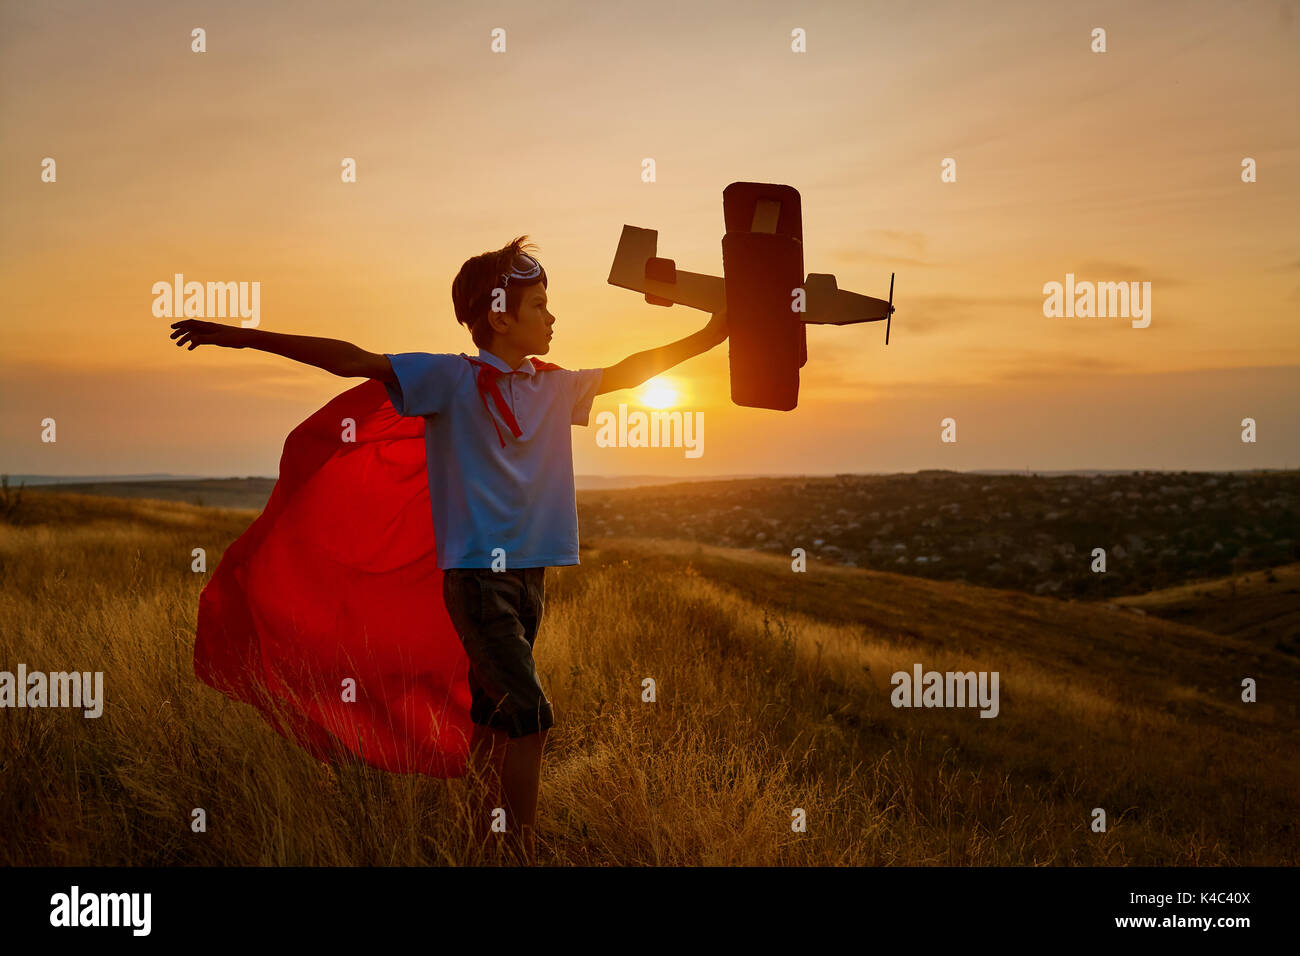 Eine glückliche junge in einen Superhelden Kostüm spielt mit einem Flugzeug. Stockfoto